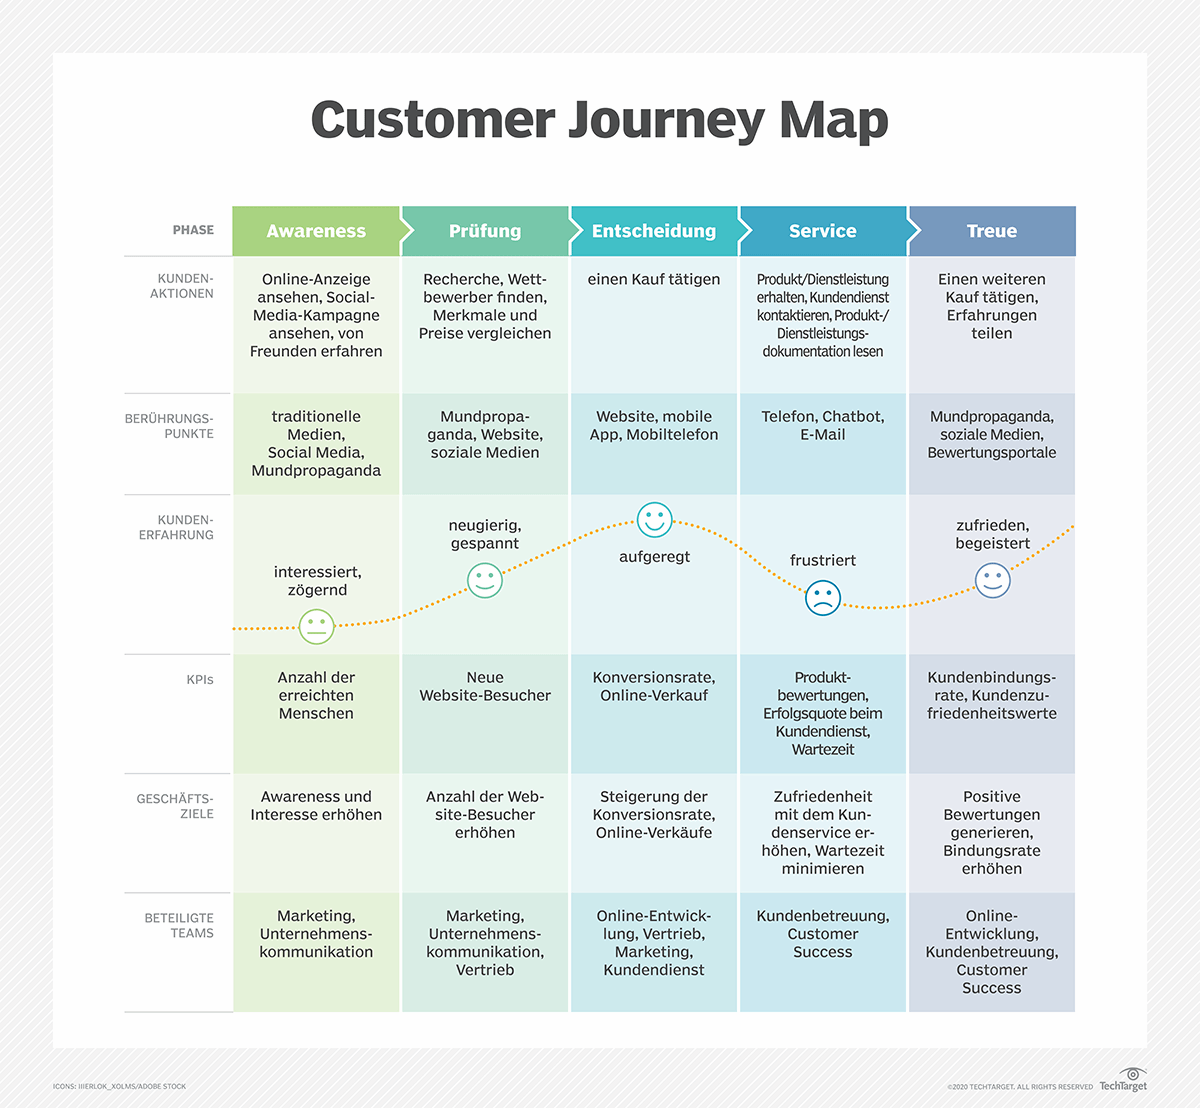 customer journey definition deutsch